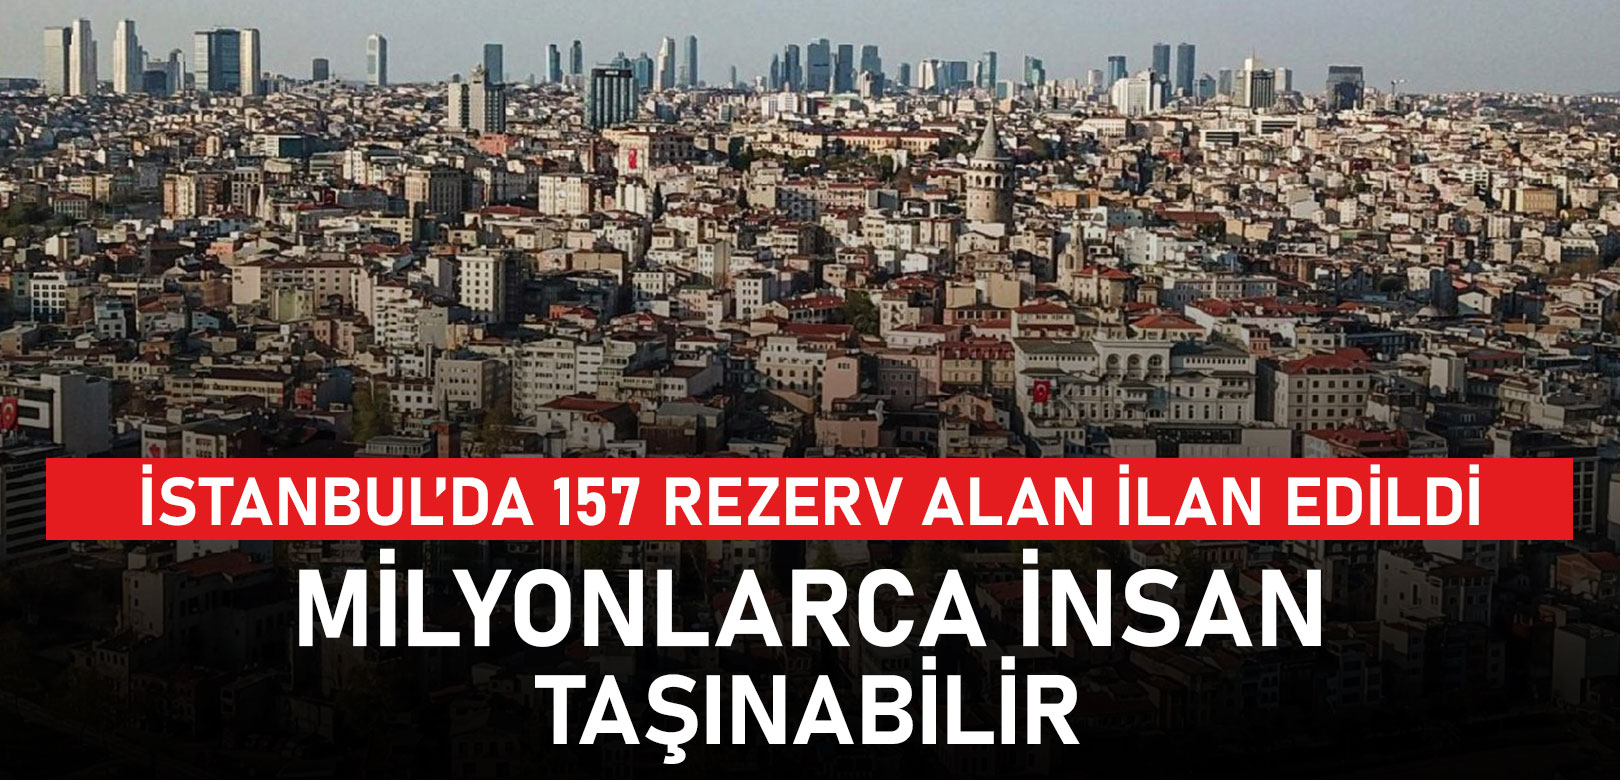 İstanbul'da 157 rezerv alan ilan edildi: 3 milyona yakın nüfus taşınabilir